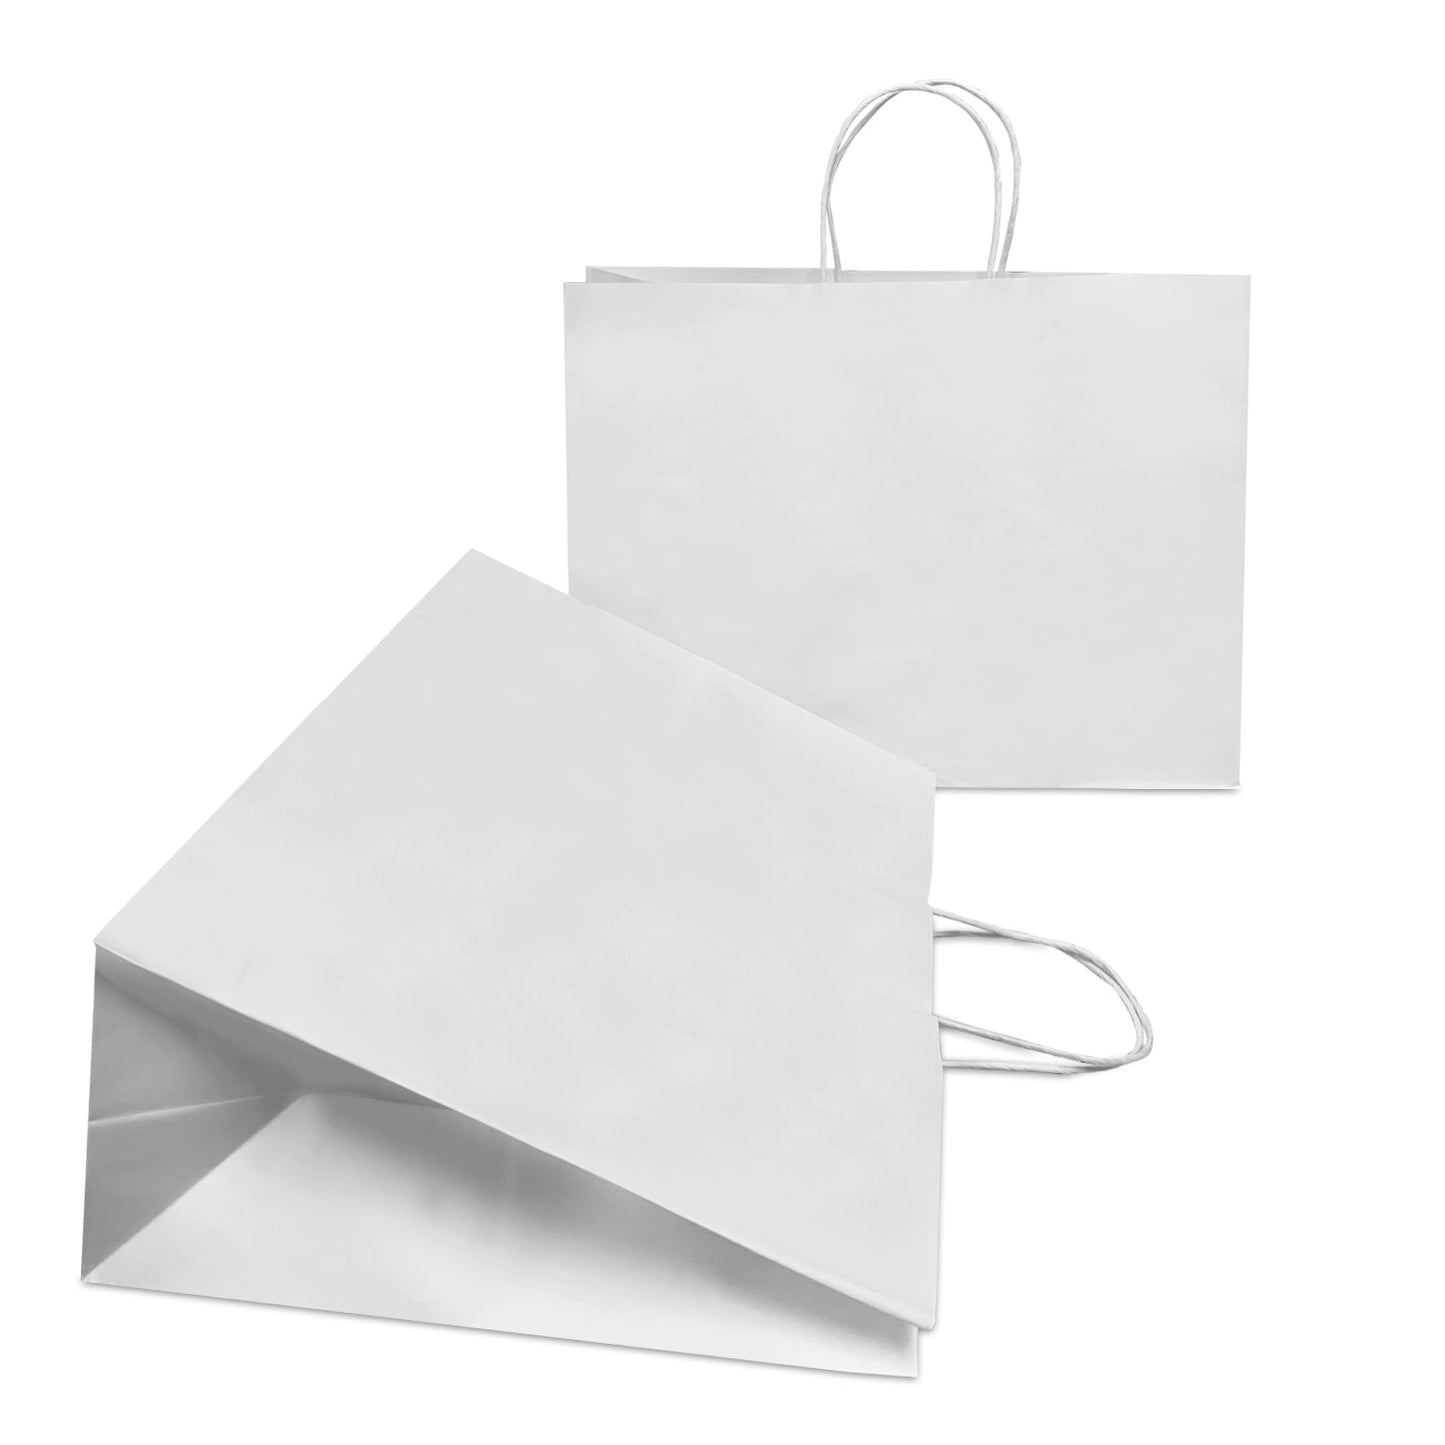 Vogue 16x6x12 White Paper Bags Twisted Handles; $1.15/pc, 50pcs/bundle, sold by bundle